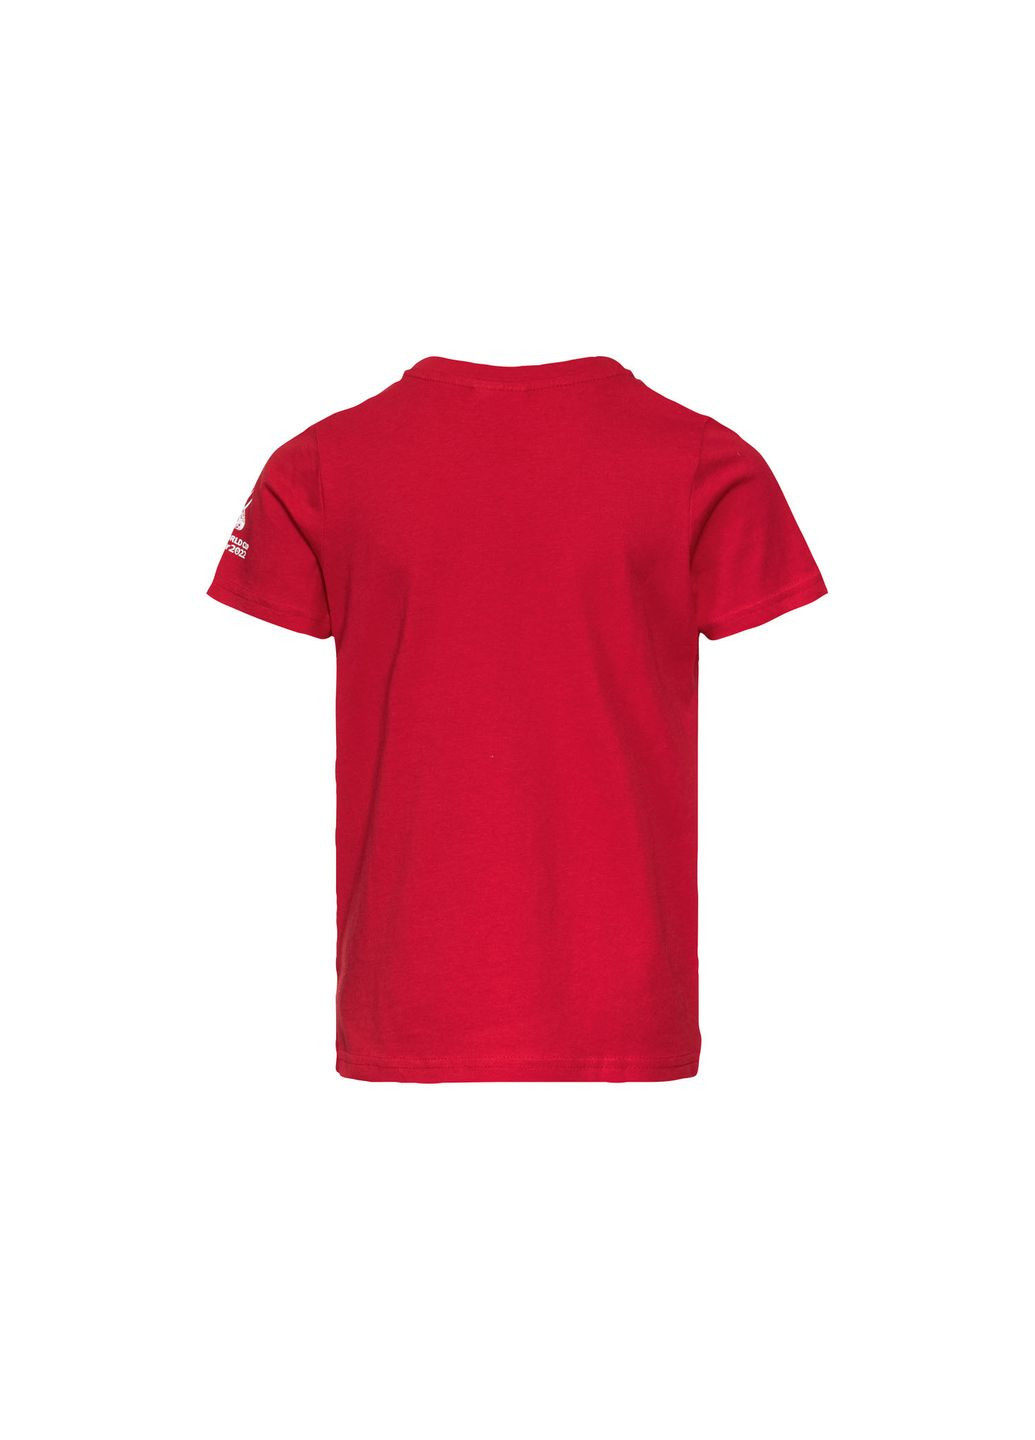 Червона демісезонна футболка бавовняна з принтом для хлопчика fifa germany 419760 червоний Lidl